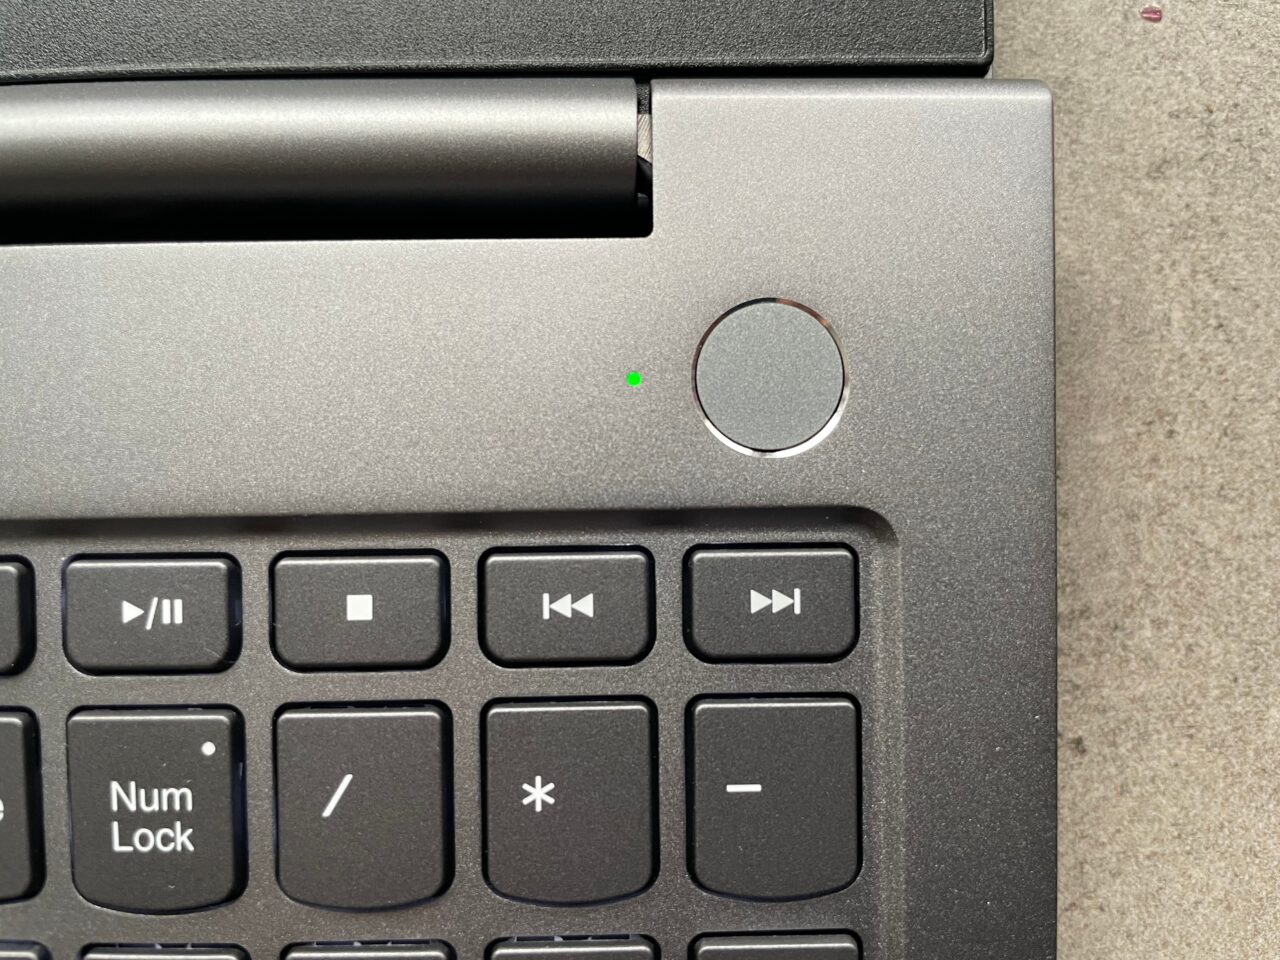 Część laptopa z widocznym przyciskiem zasilania, klawiszami multimediów i klawiszem Num Lock na klawiaturze.